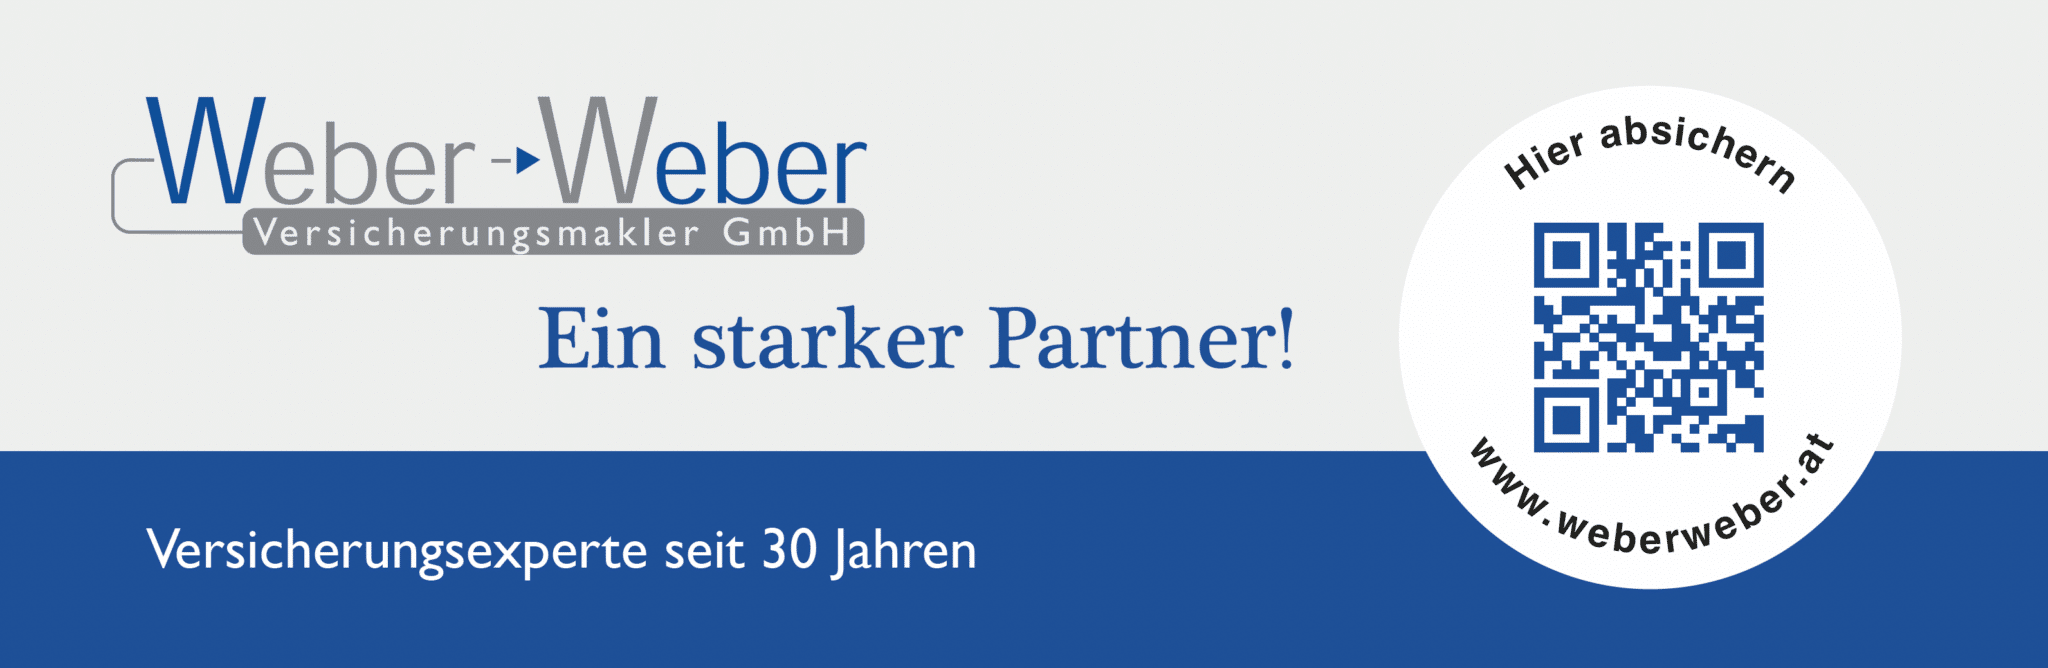 Inserat Strarker Partner - Weber Weber Versicherungsmakler